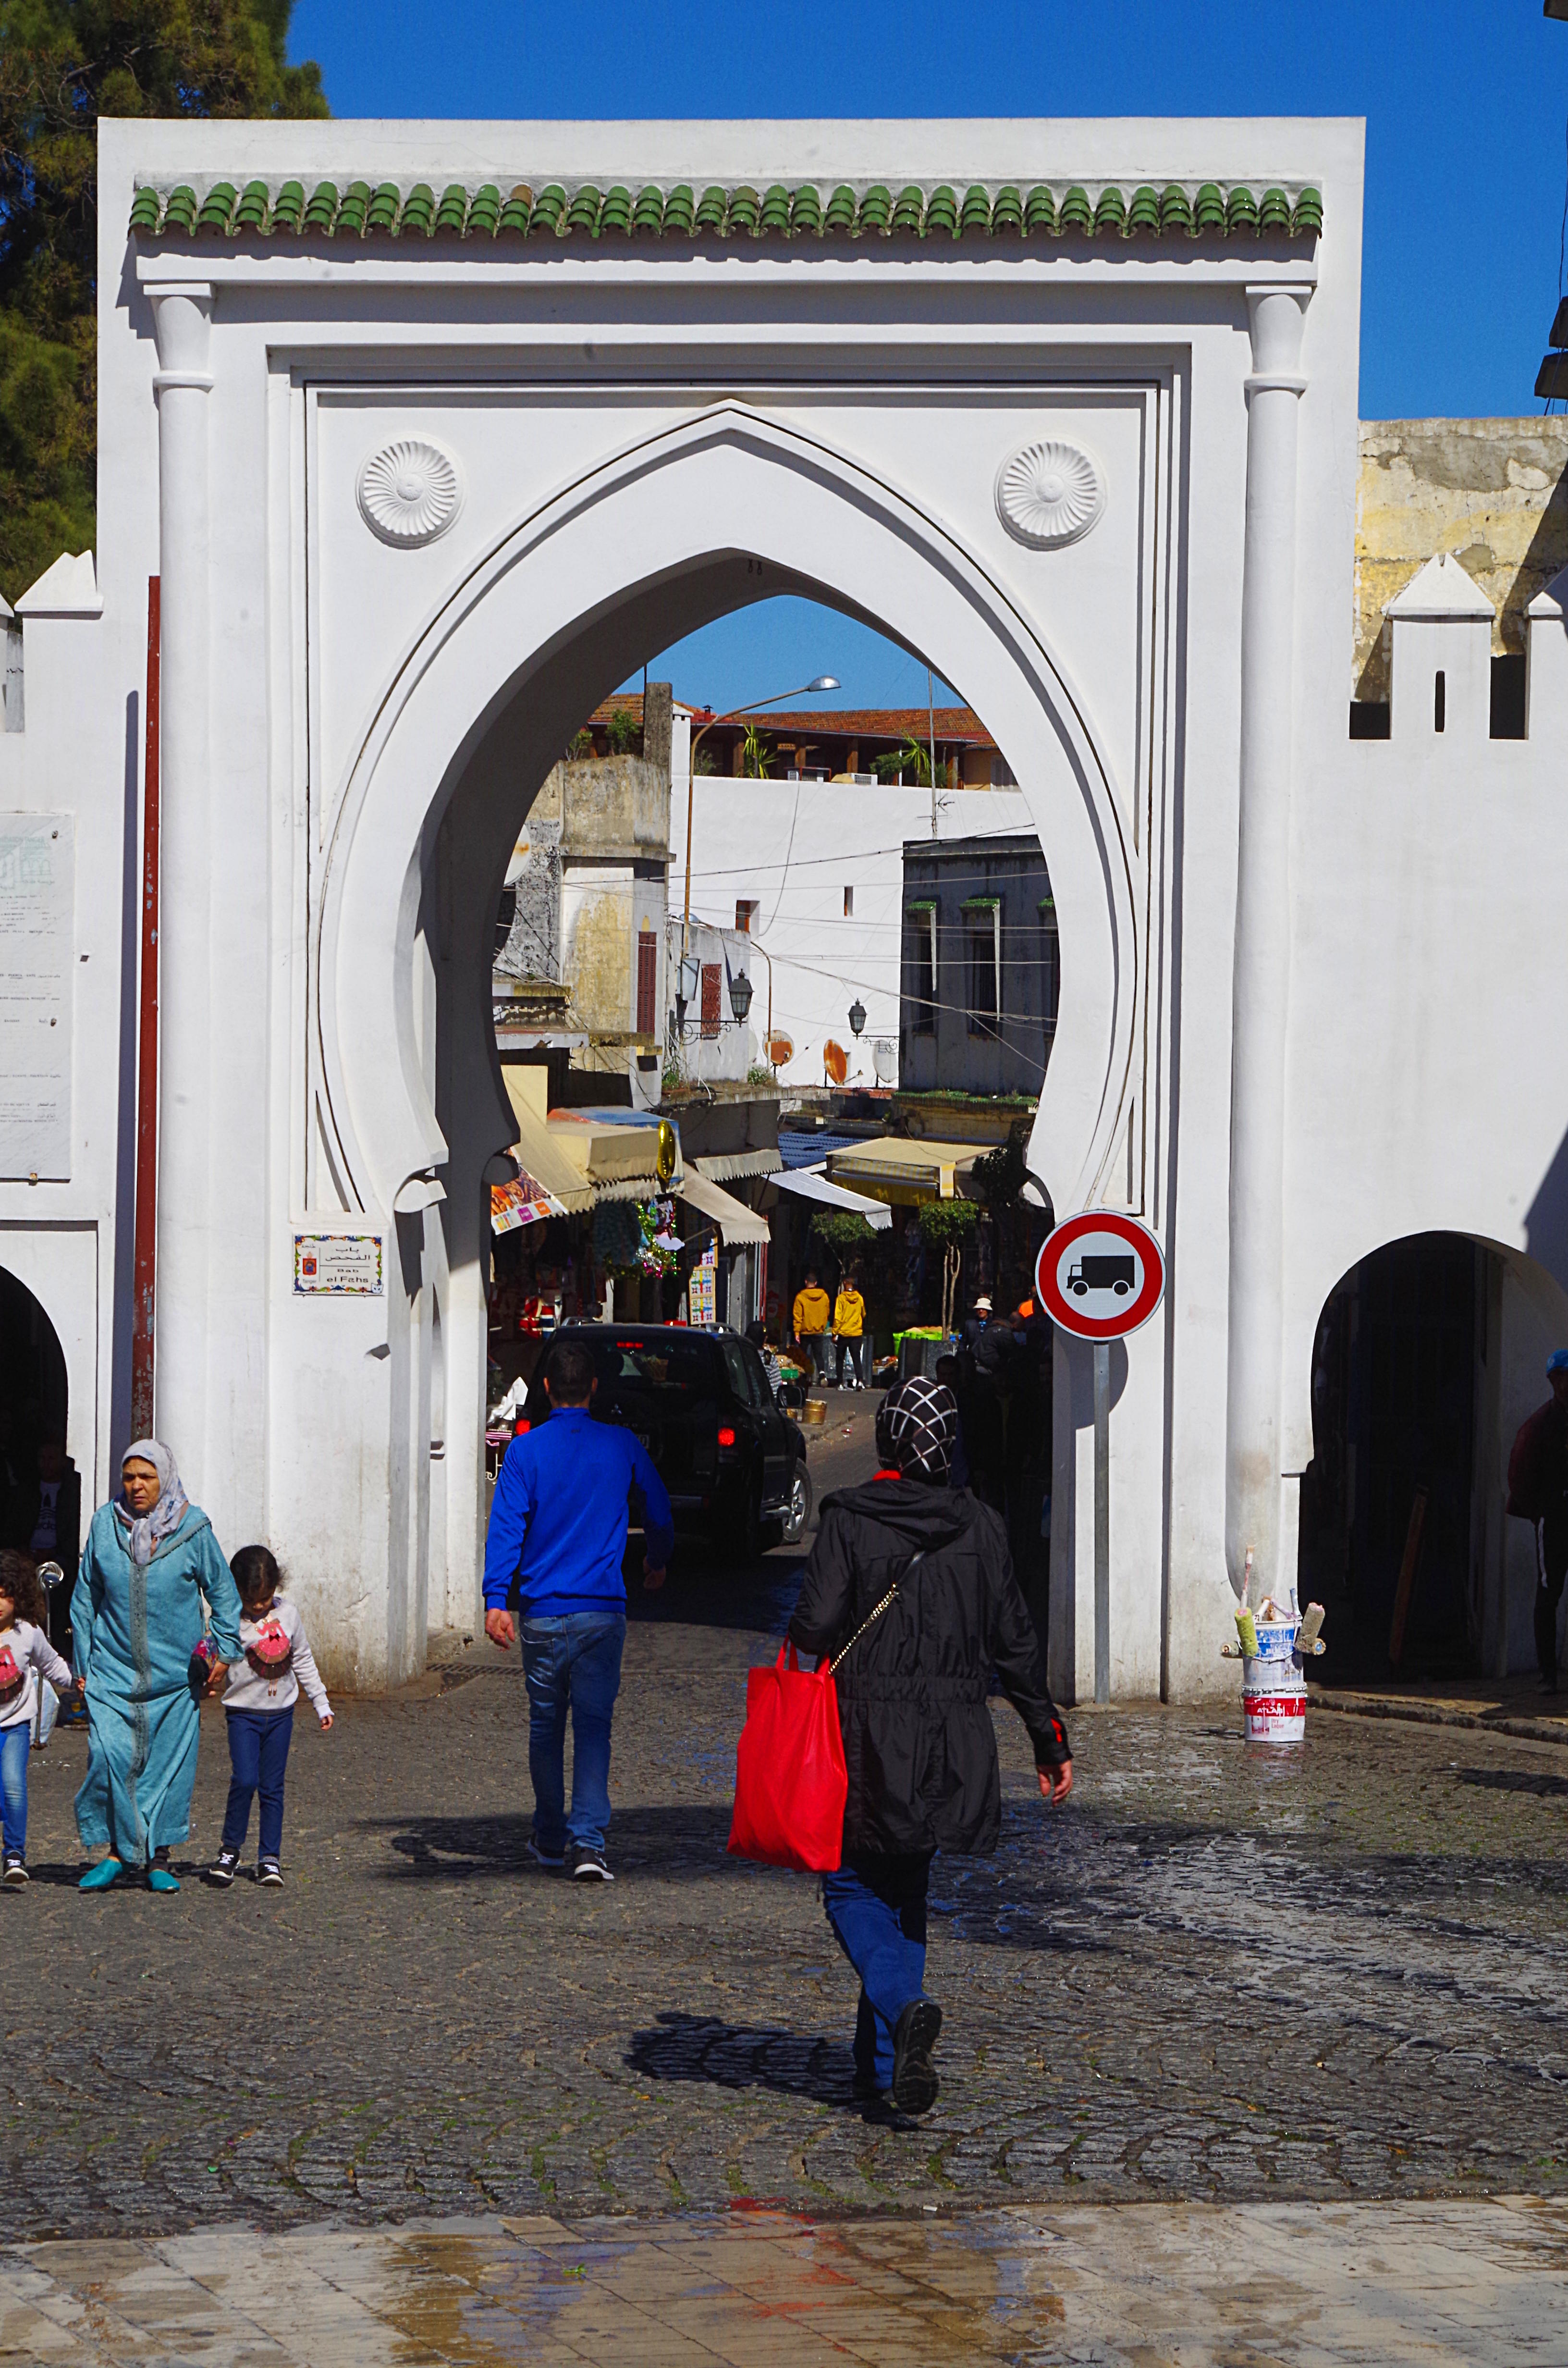 باب - مدخل إلى مدينة طنجة القديمة - المغرب. Foto: Claudia Mende